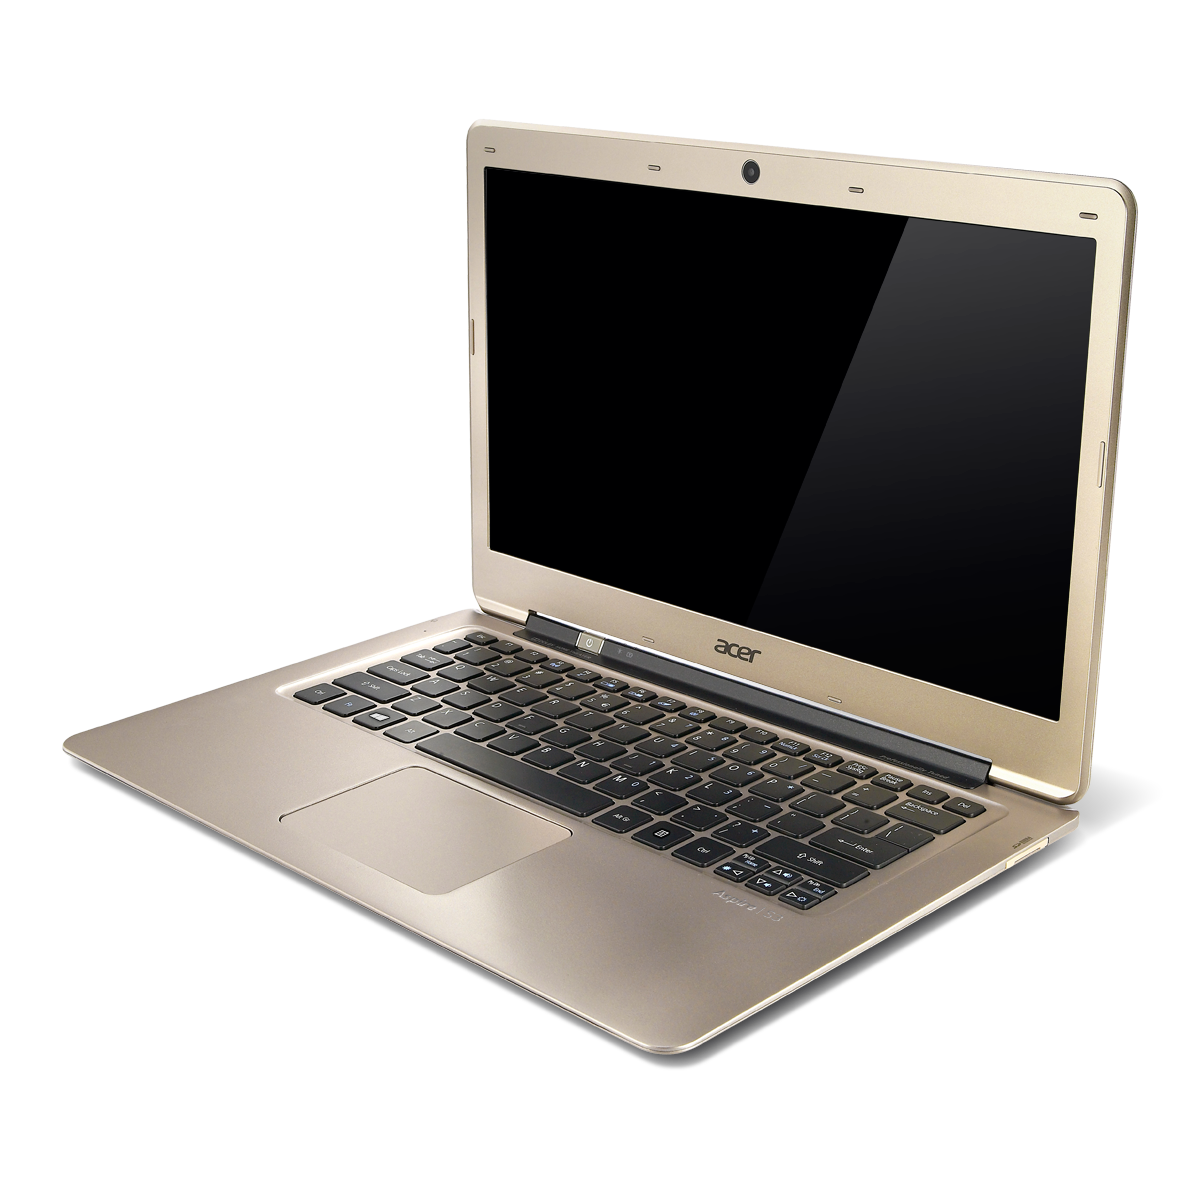 Недорогие ноутбуки екатеринбург. Ноутбук Acer Aspire s3-391. Acer Aspire s3 2346. Acer Aspire s3-391-53314g52add. Ноутбук Acer Aspire i5.